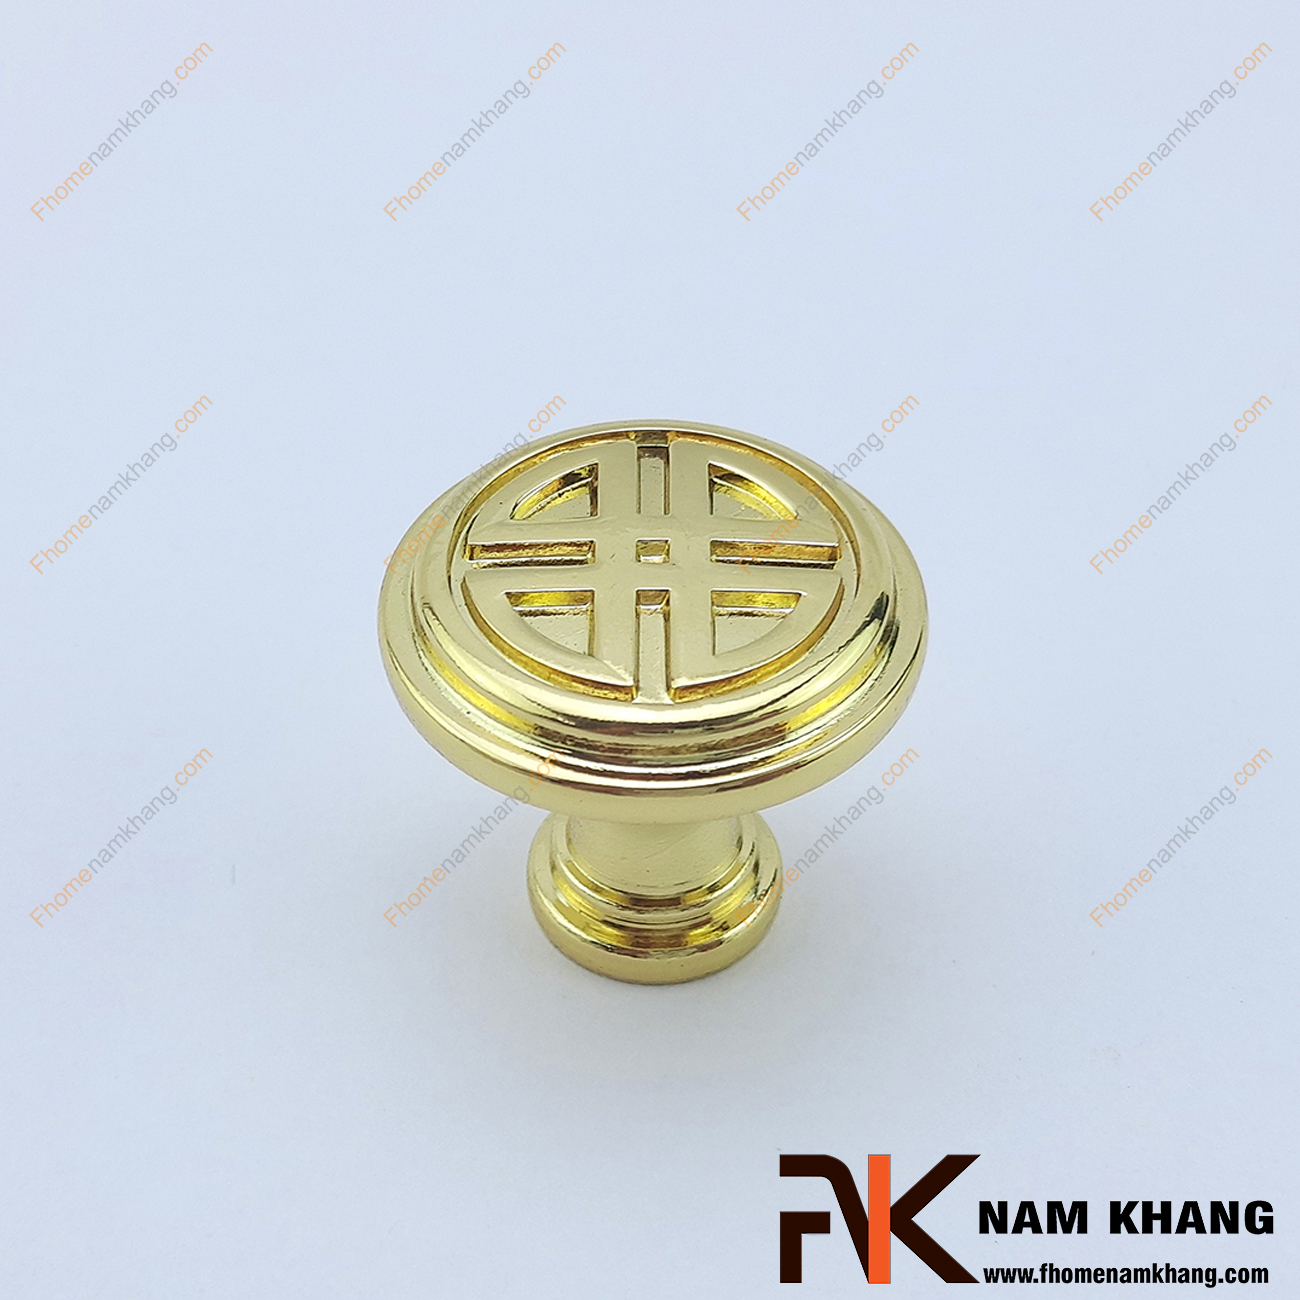 Tay nắm cửa tủ tròn mạ vàng họa tiết châu á NK039-V là phụ kiện được sử dụng trên các cánh cửa tủ bếp, ngăn kéo, tủ quần áo, tủ nội thất trưng bày.